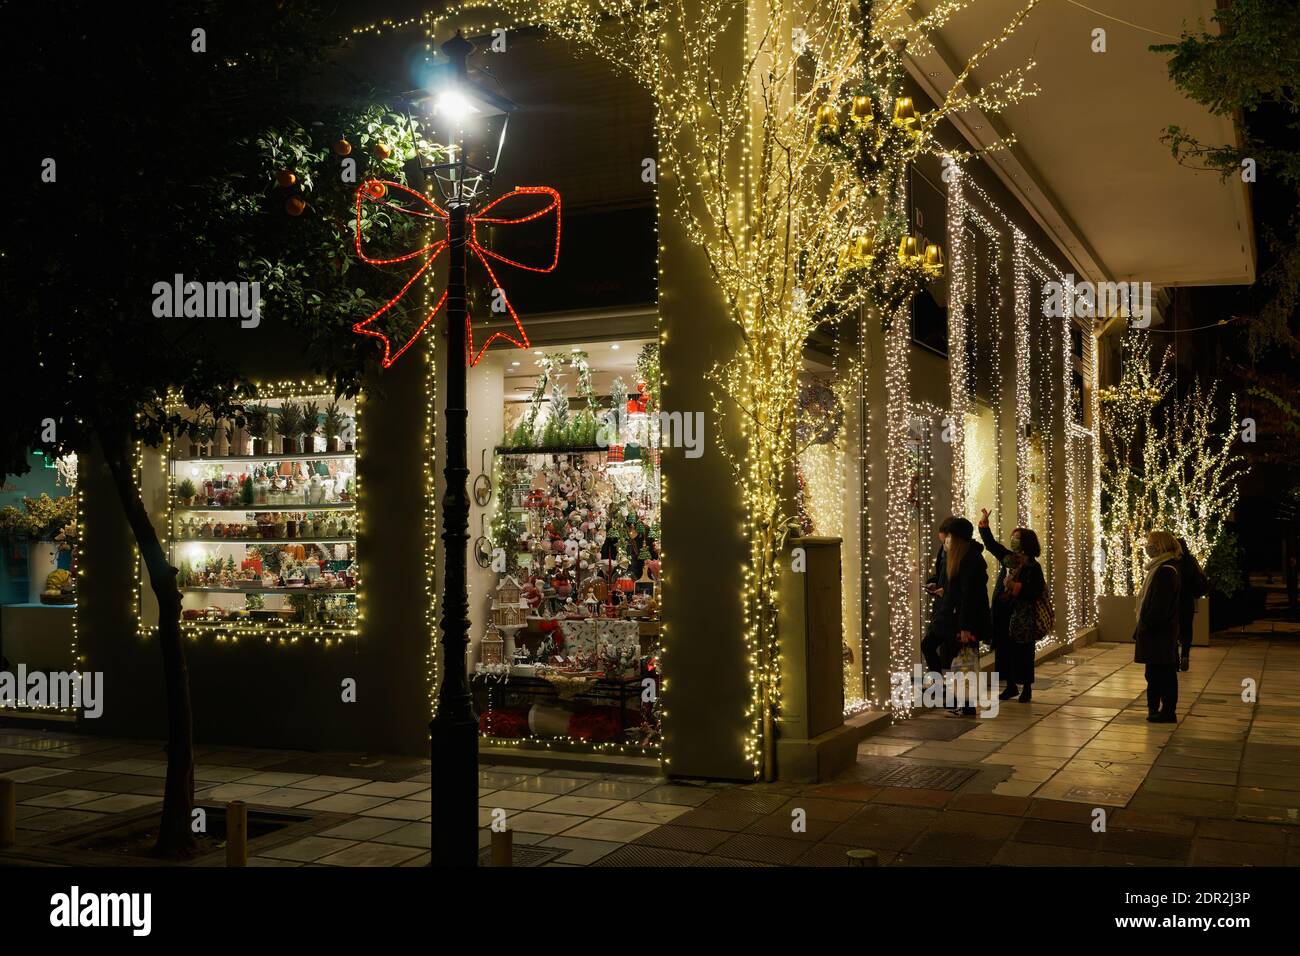 Thessaloniki, Griechenland - Dezember 18 2020: Hellenic Weihnachtsgeschäft mit Kunden warten auf den Eingang.Menge in der Schlange außerhalb beleuchtet Nacht Blick auf dekorierten saisonalen Speicher. Stockfoto